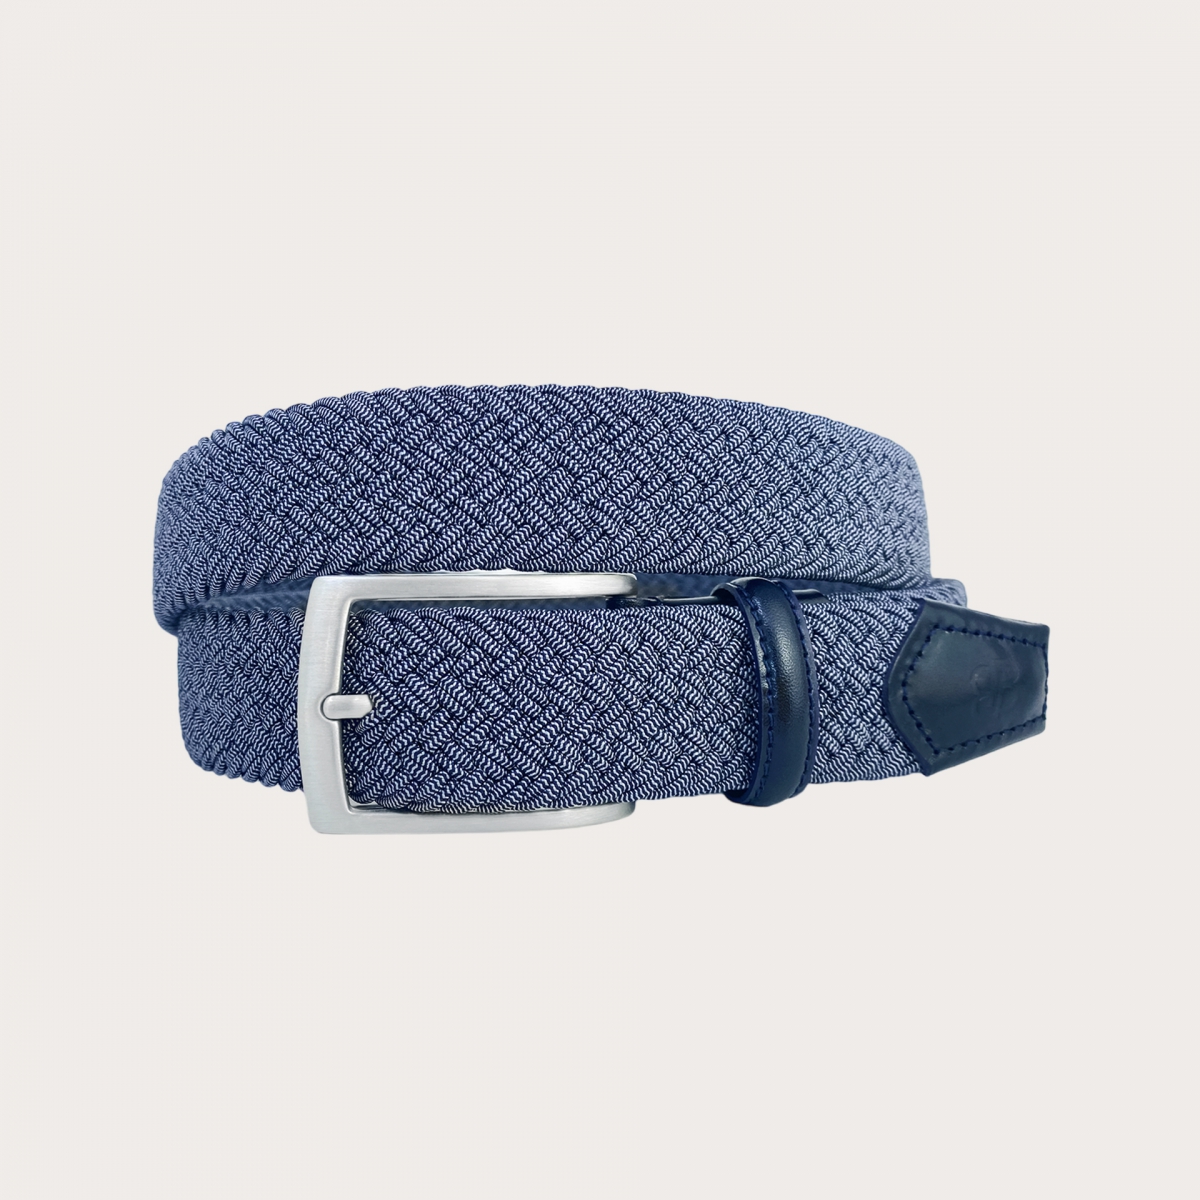 BRUCLE Geflochtener elastischer Gürtel im Melange-Blau-Stil mit nickelfreier Schnalle